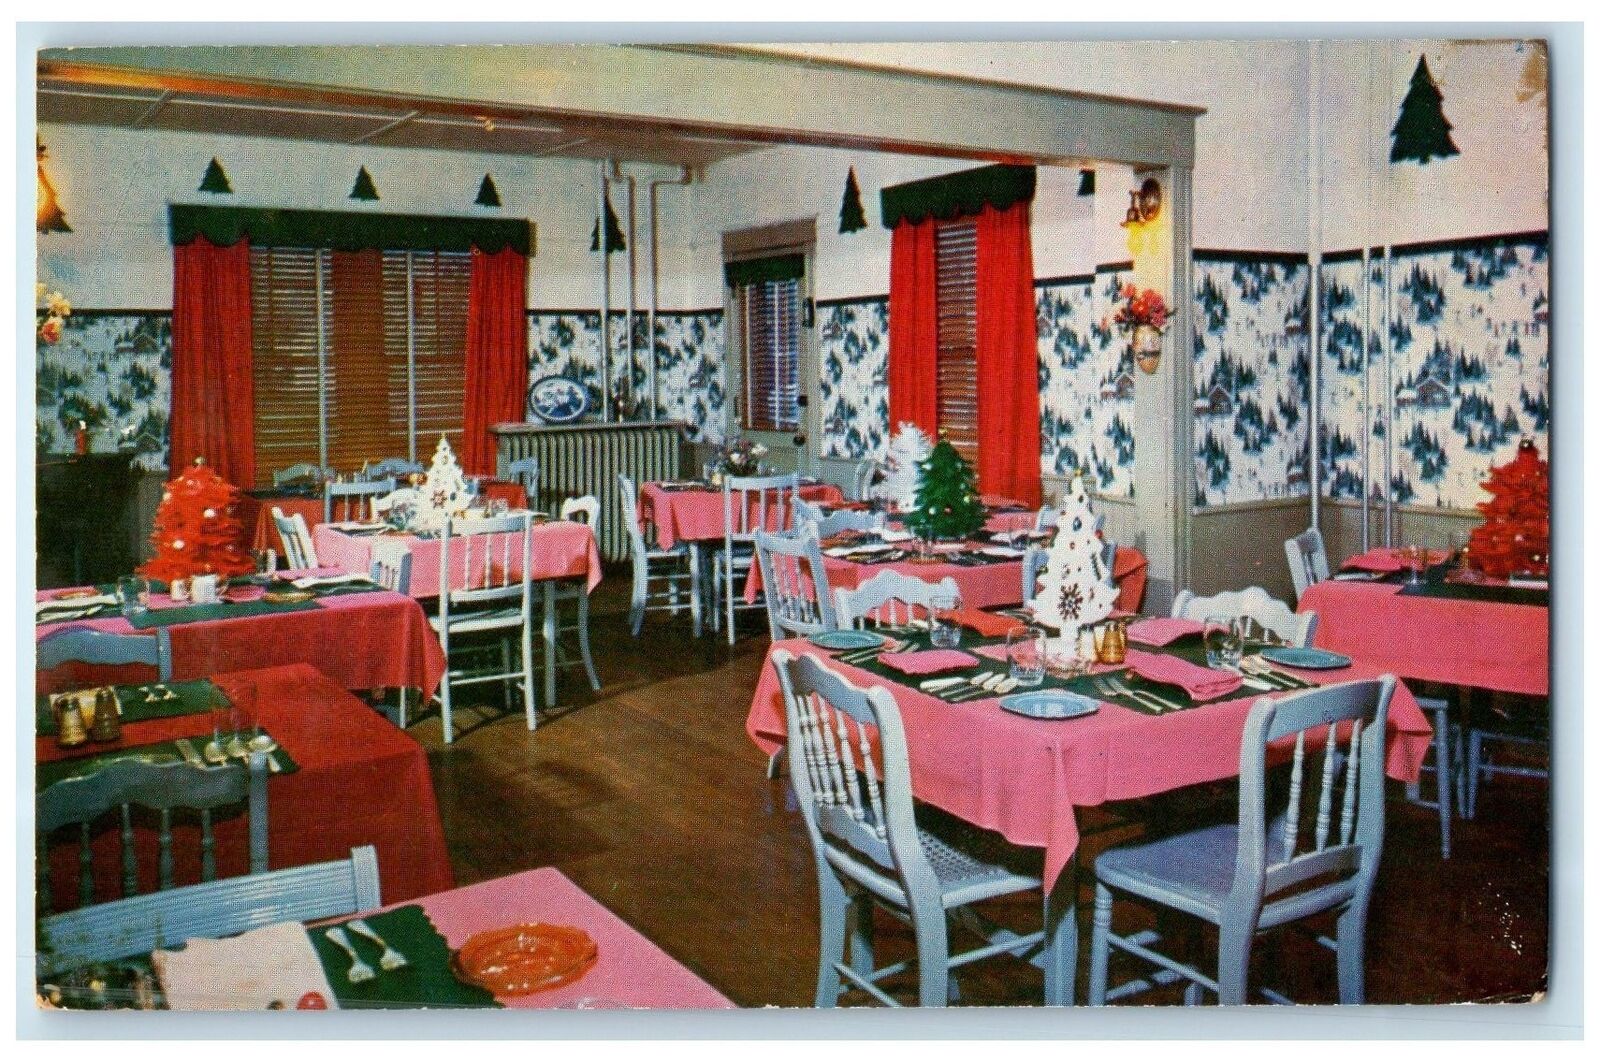 c1960's Dining Room For Glenwood Inn Interior Lake Placid New York NY Postcard